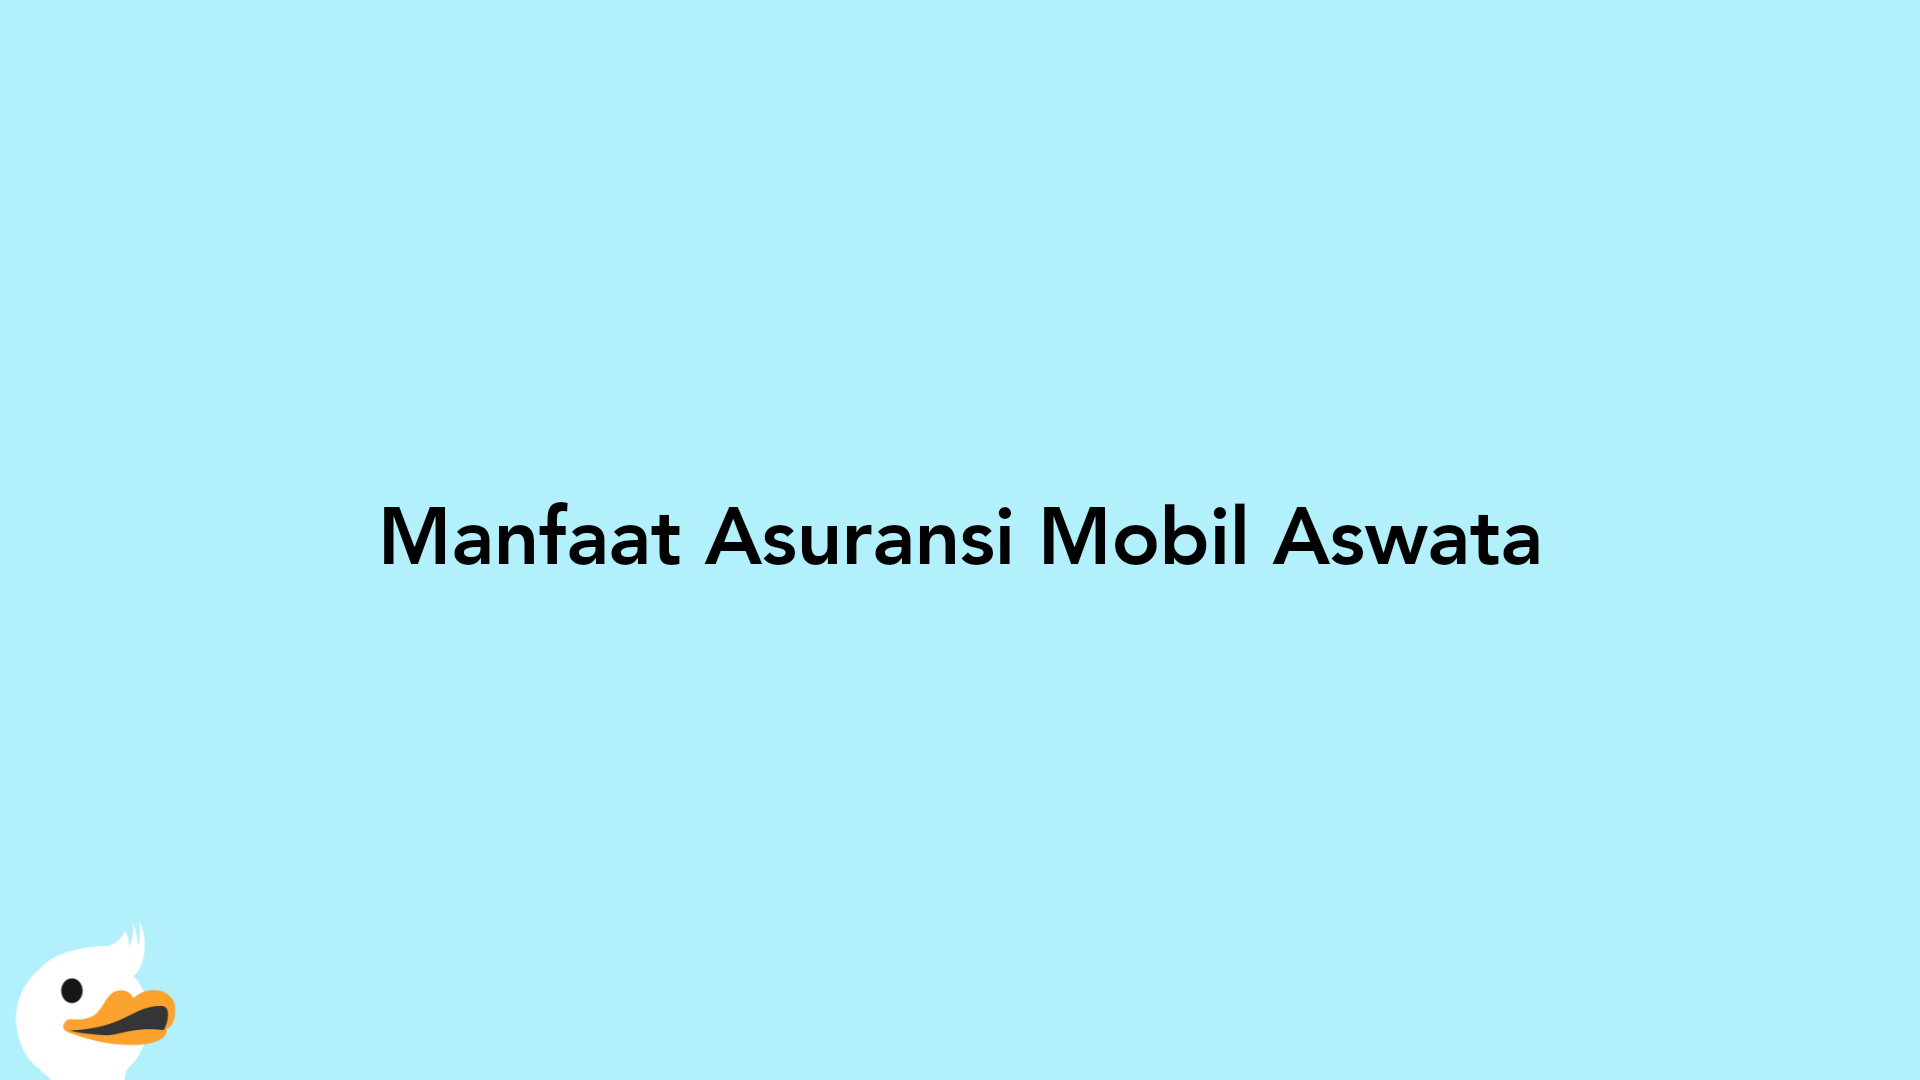 Manfaat Asuransi Mobil Aswata